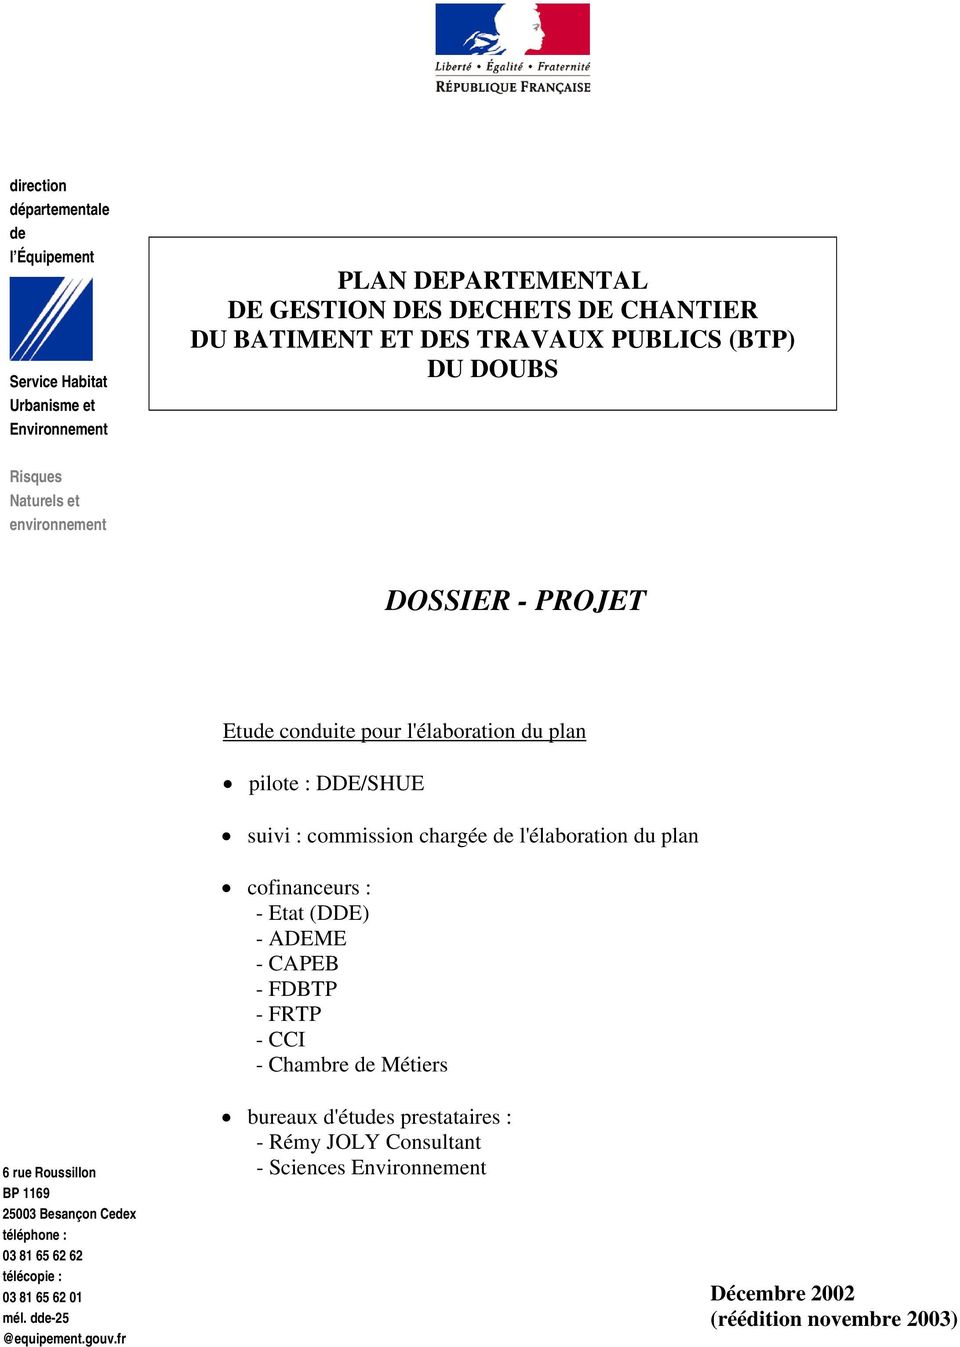 l'élaboration du plan cofinanceurs : - Etat (DDE) - ADEME - CAPEB - FDBTP - FRTP - CCI - Chambre de Métiers 6 rue Roussillon BP 1169 25003 Besançon Cedex téléphone : 03 81